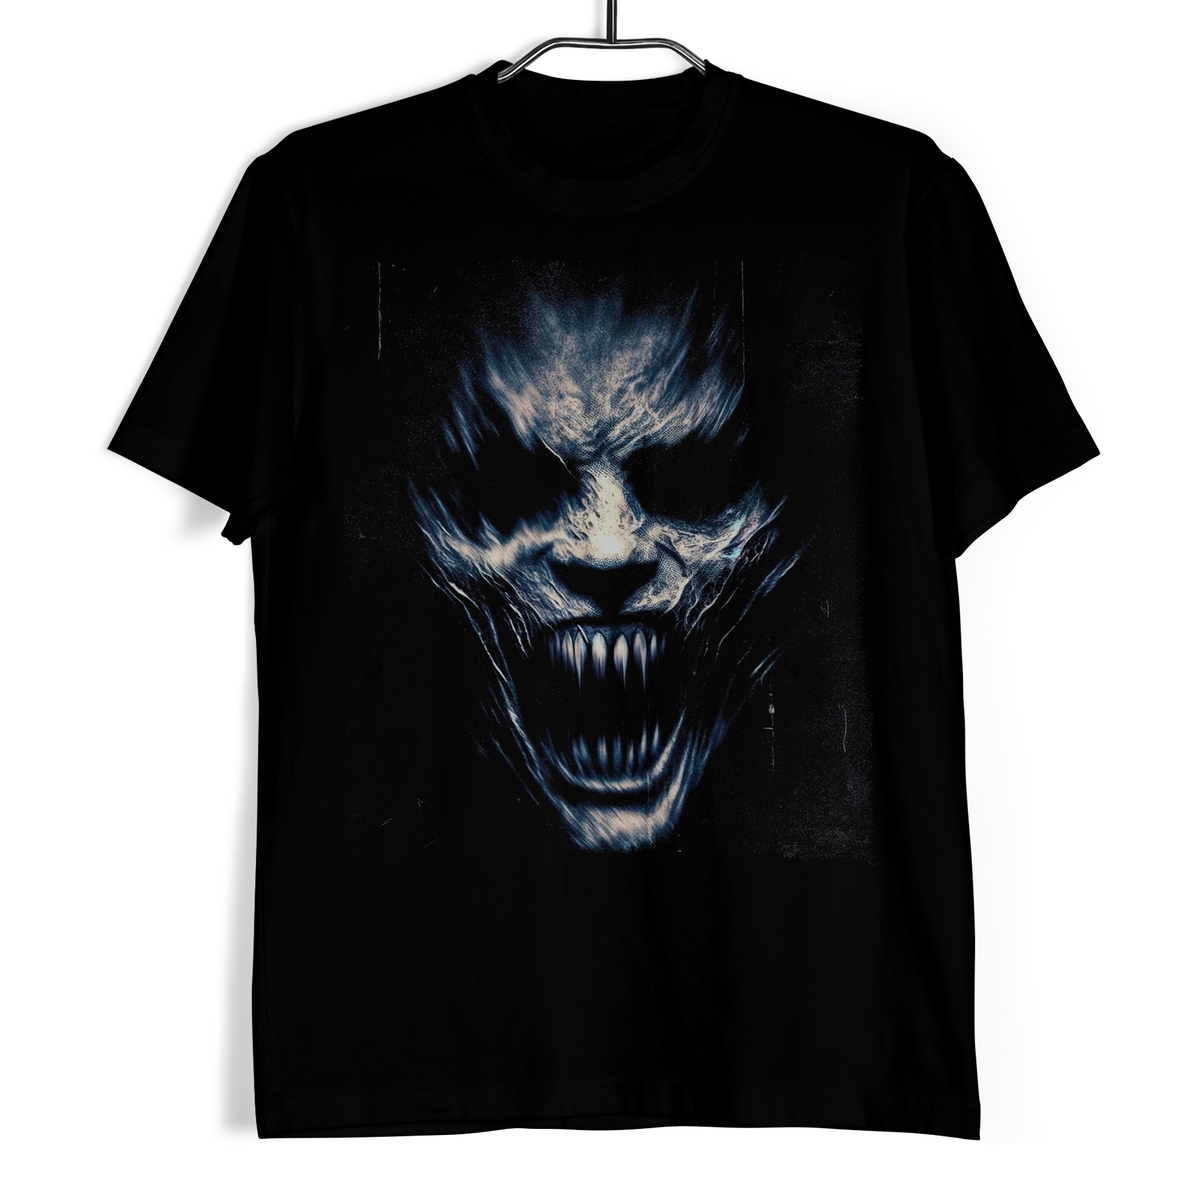 Tričko s lebkou - Temný Vřískot XL